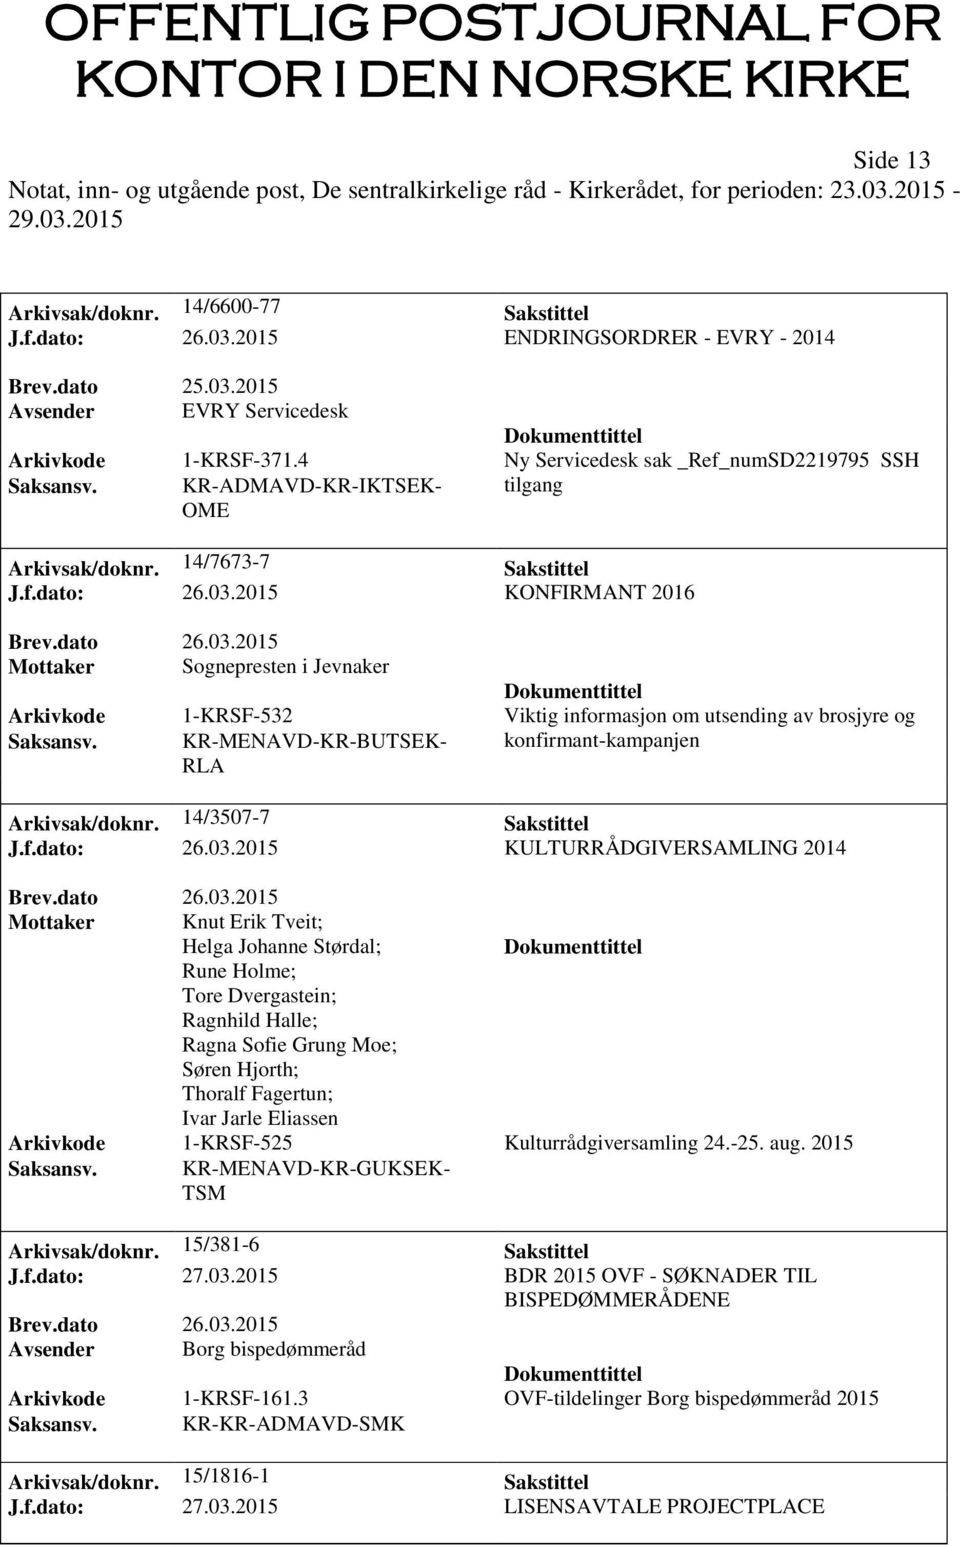 2015 KONFIRMANT 2016 Mottaker Sognepresten i Jevnaker Arkivkode 1-KRSF-532 Viktig informasjon om utsending av brosjyre og Saksansv. KR-MENAVD-KR-BUTSEK- RLA konfirmant-kampanjen Arkivsak/doknr.